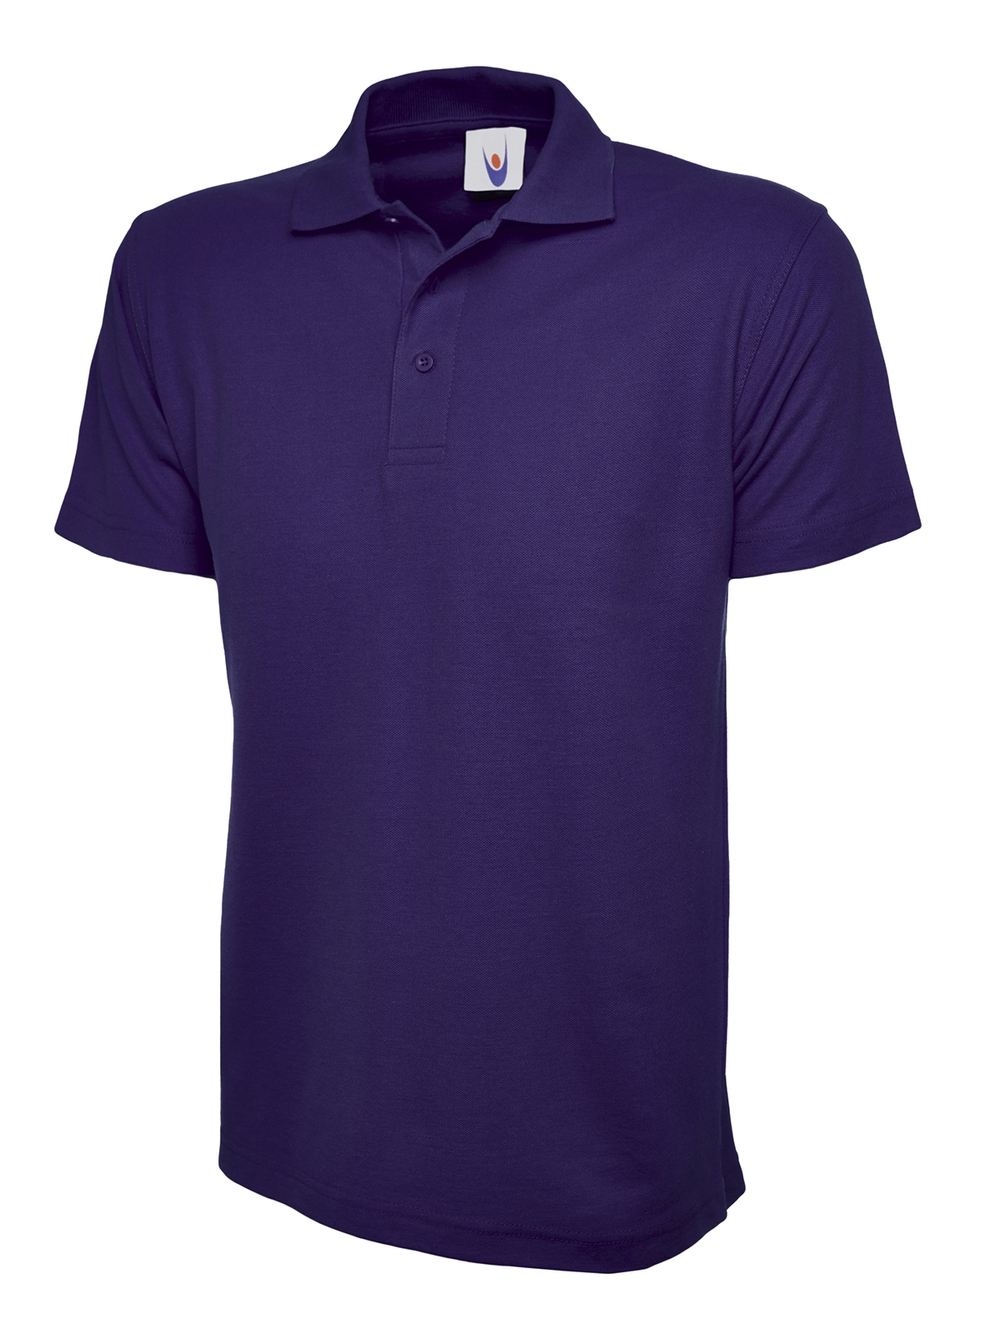 Purplepoloshirt